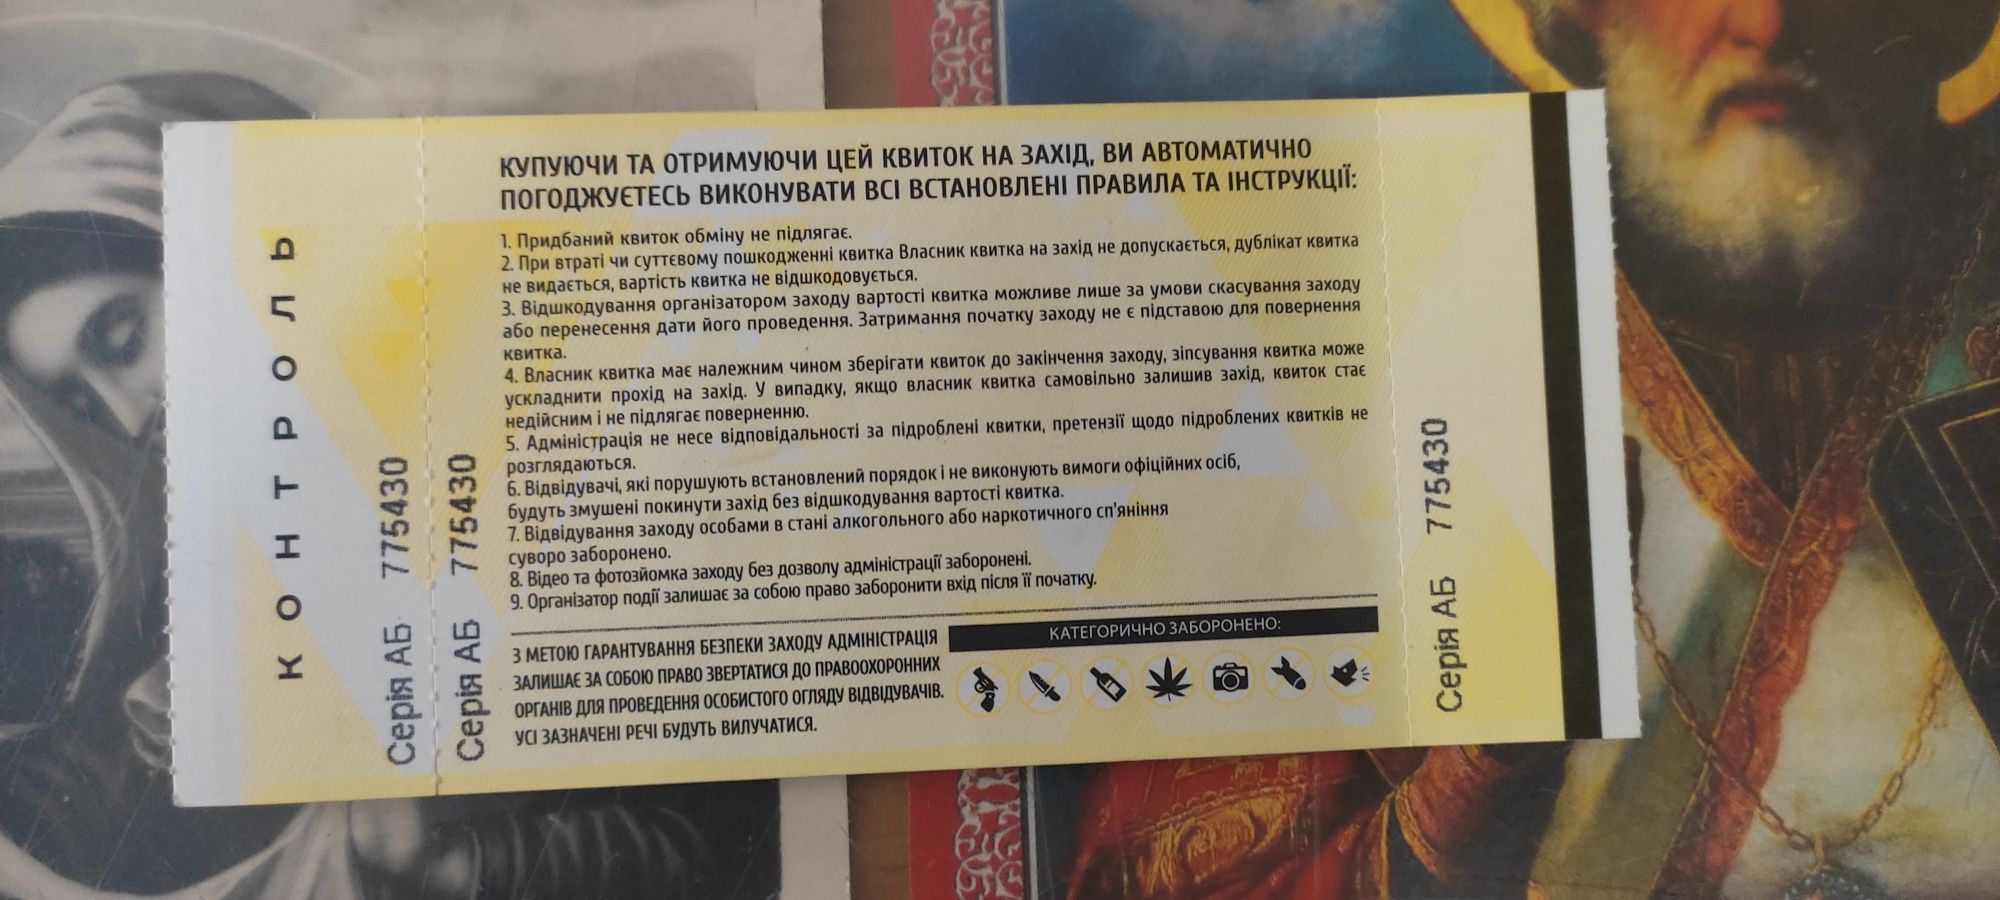 Продам входной билет на Единственный проведенный ЧЕ по боксу в Украине